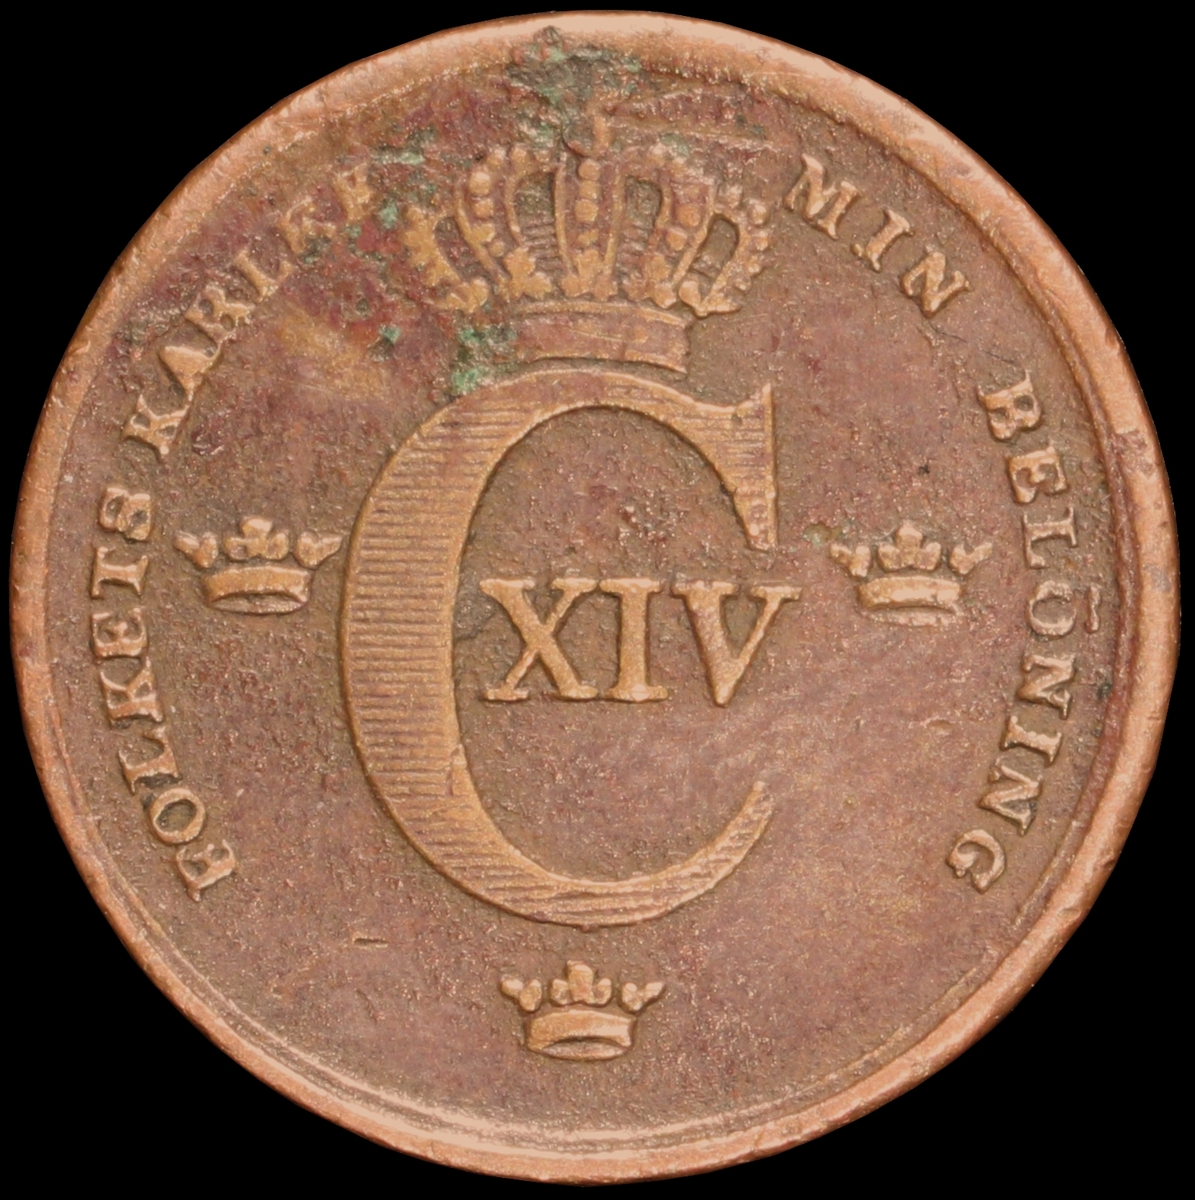 Mynt med valören 1 skilling banco. Åtsidan har Kung Karl XIV Johans emblem och valspråk. Frånsidan visar valören, två korslagda pilar samt en växtkrans.